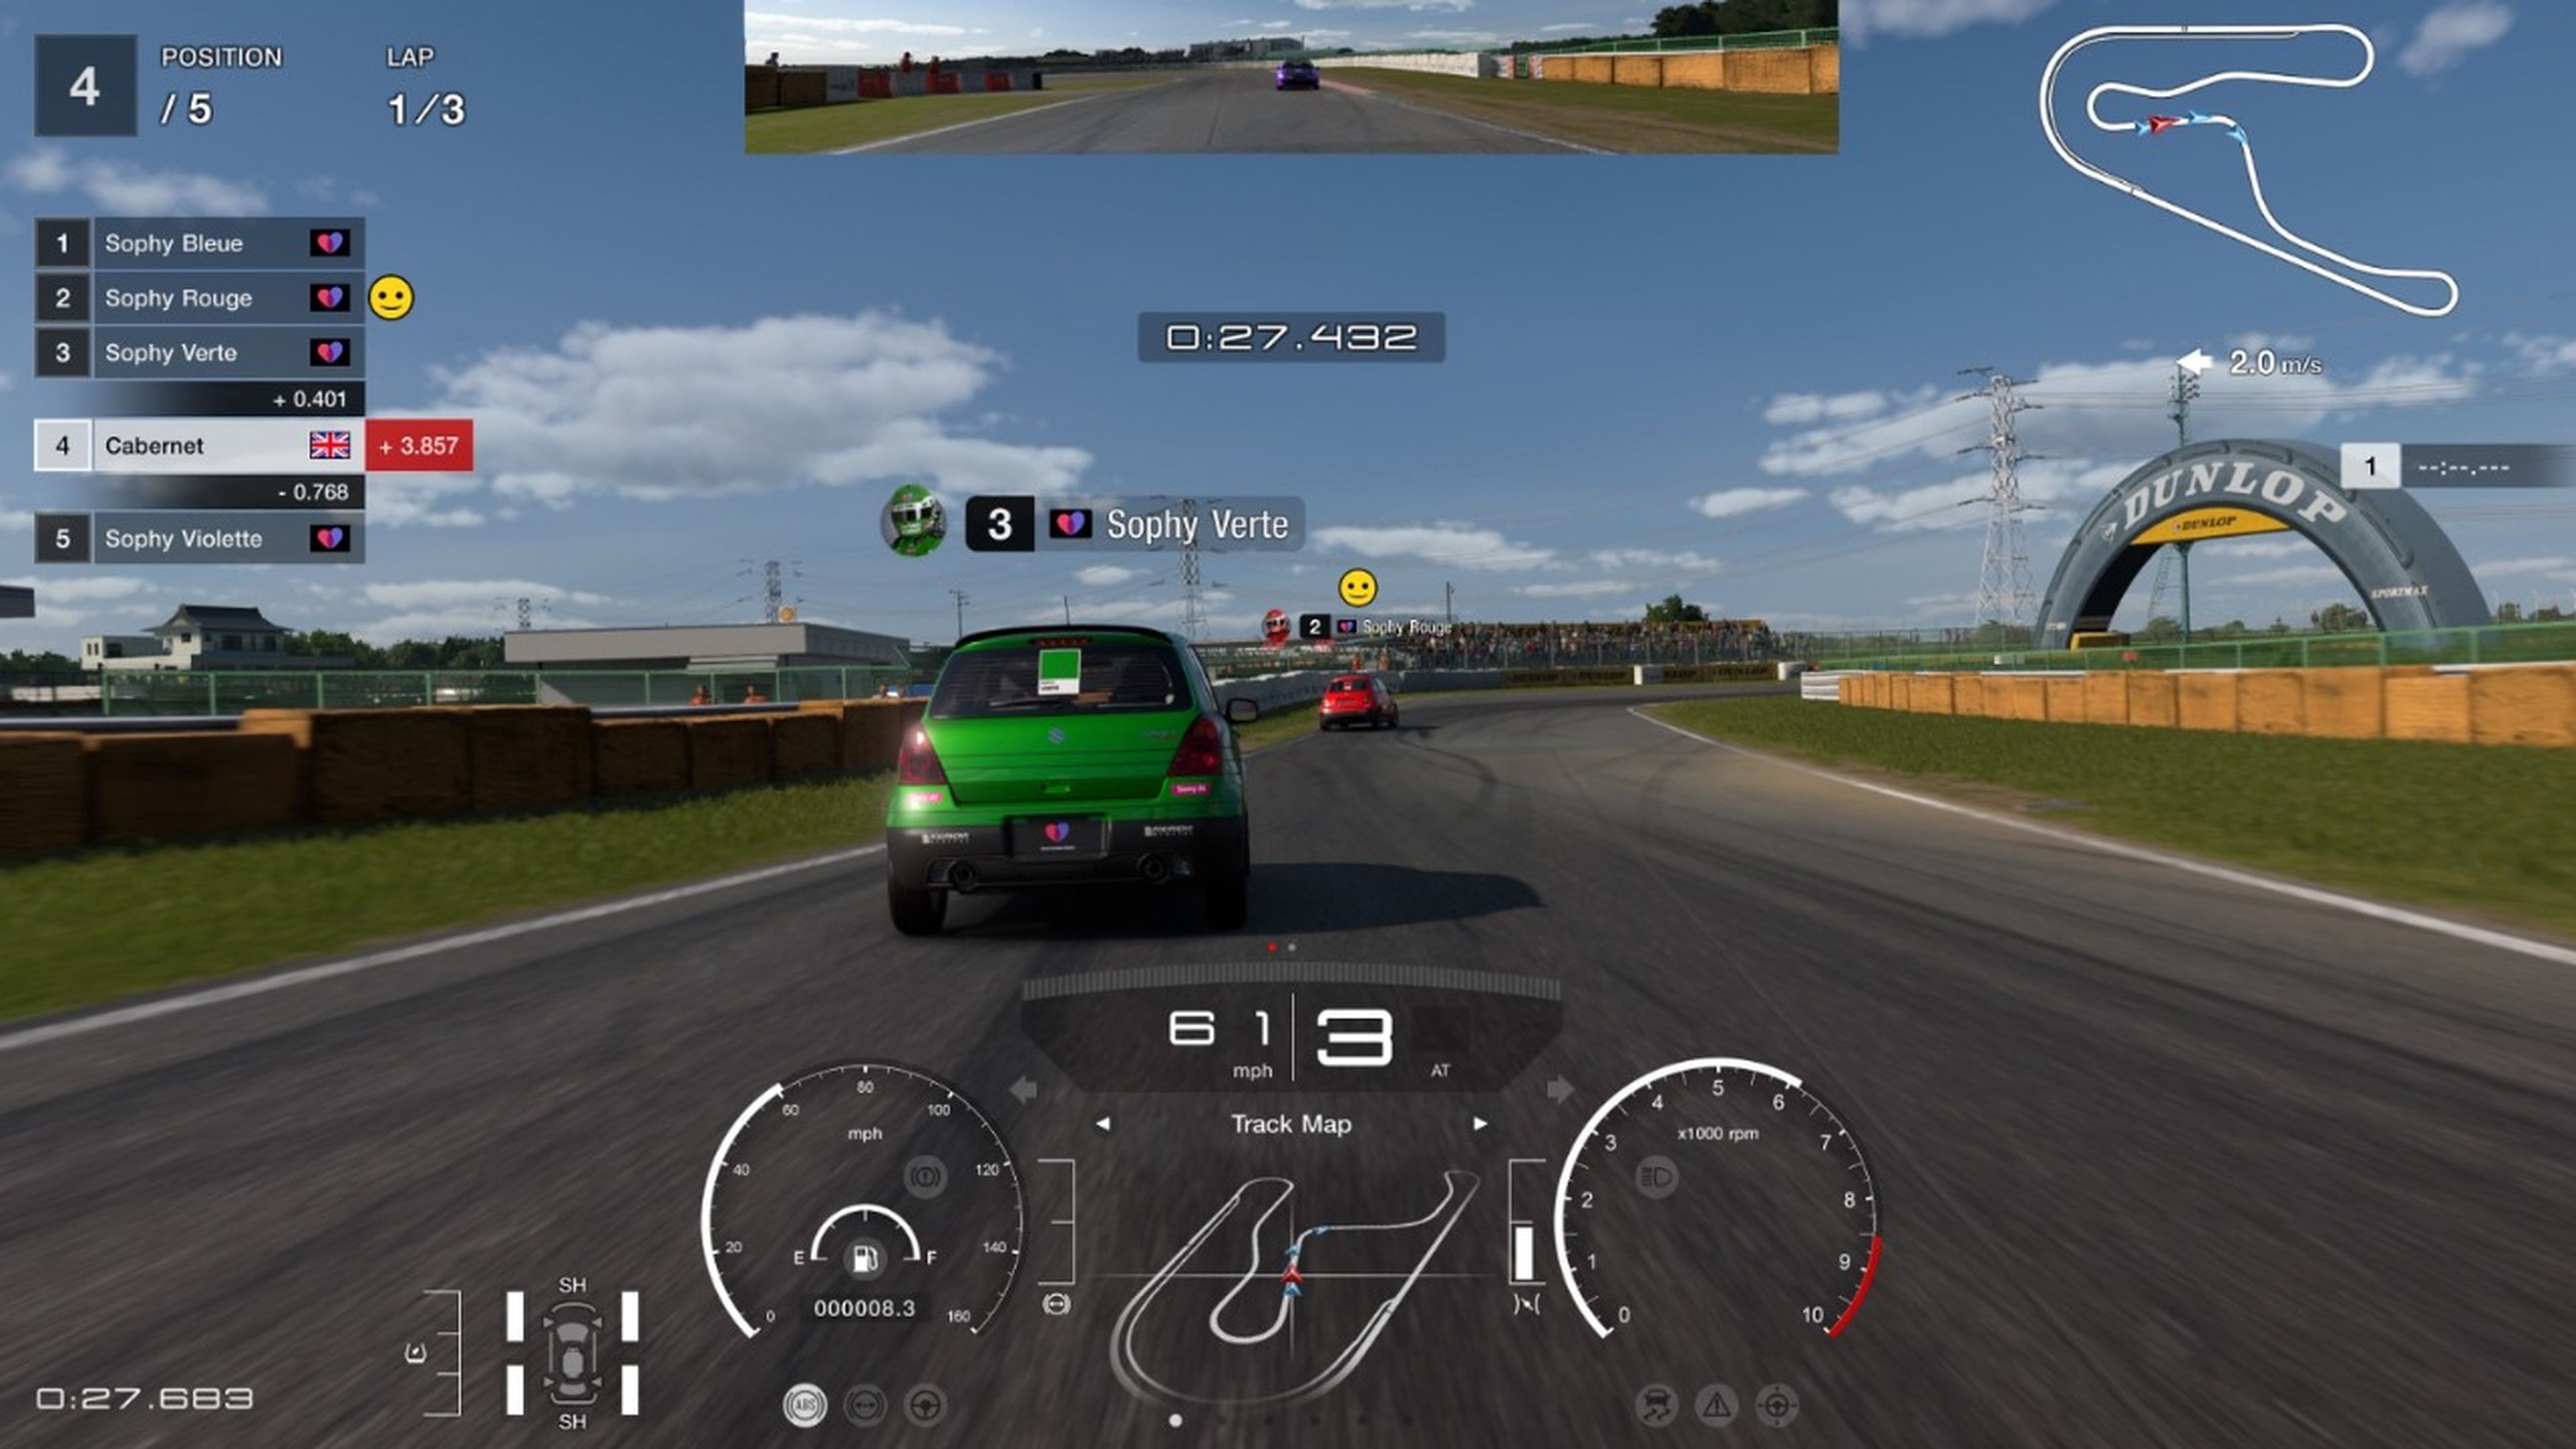 Gran Turismo 7 ya permite ponerte a prueba contra su “invencible” IA GT Sophy